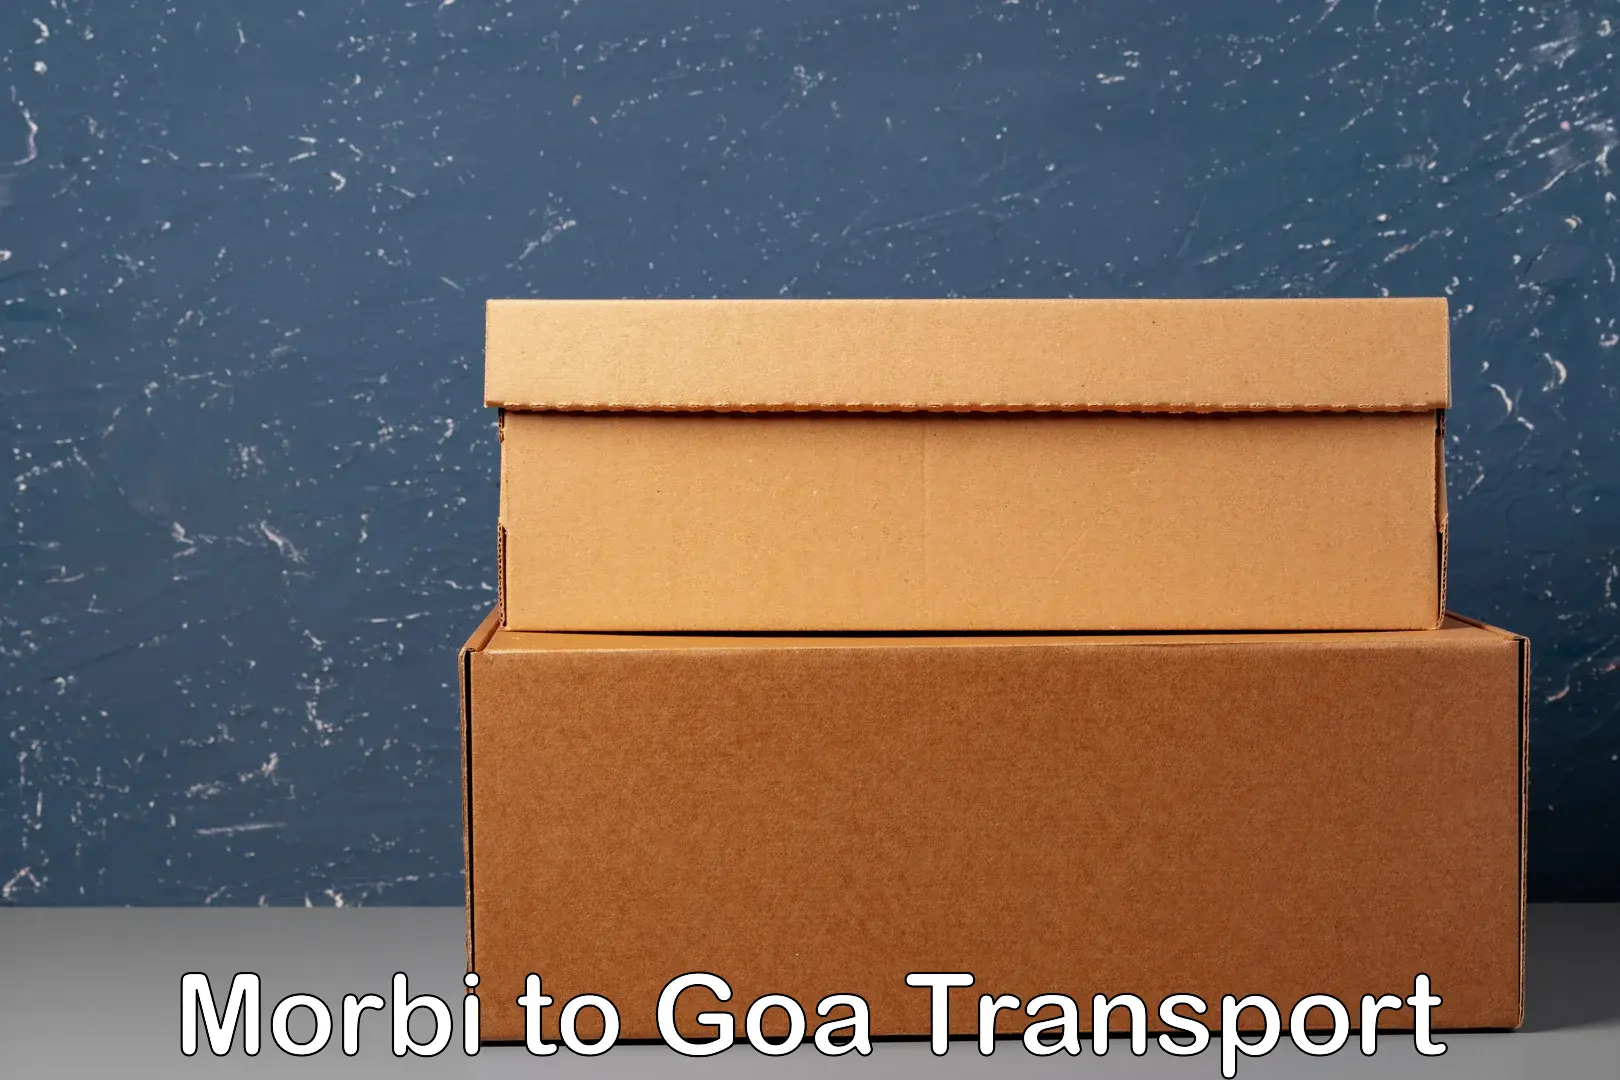 All India transport service Morbi to Mormugao Port